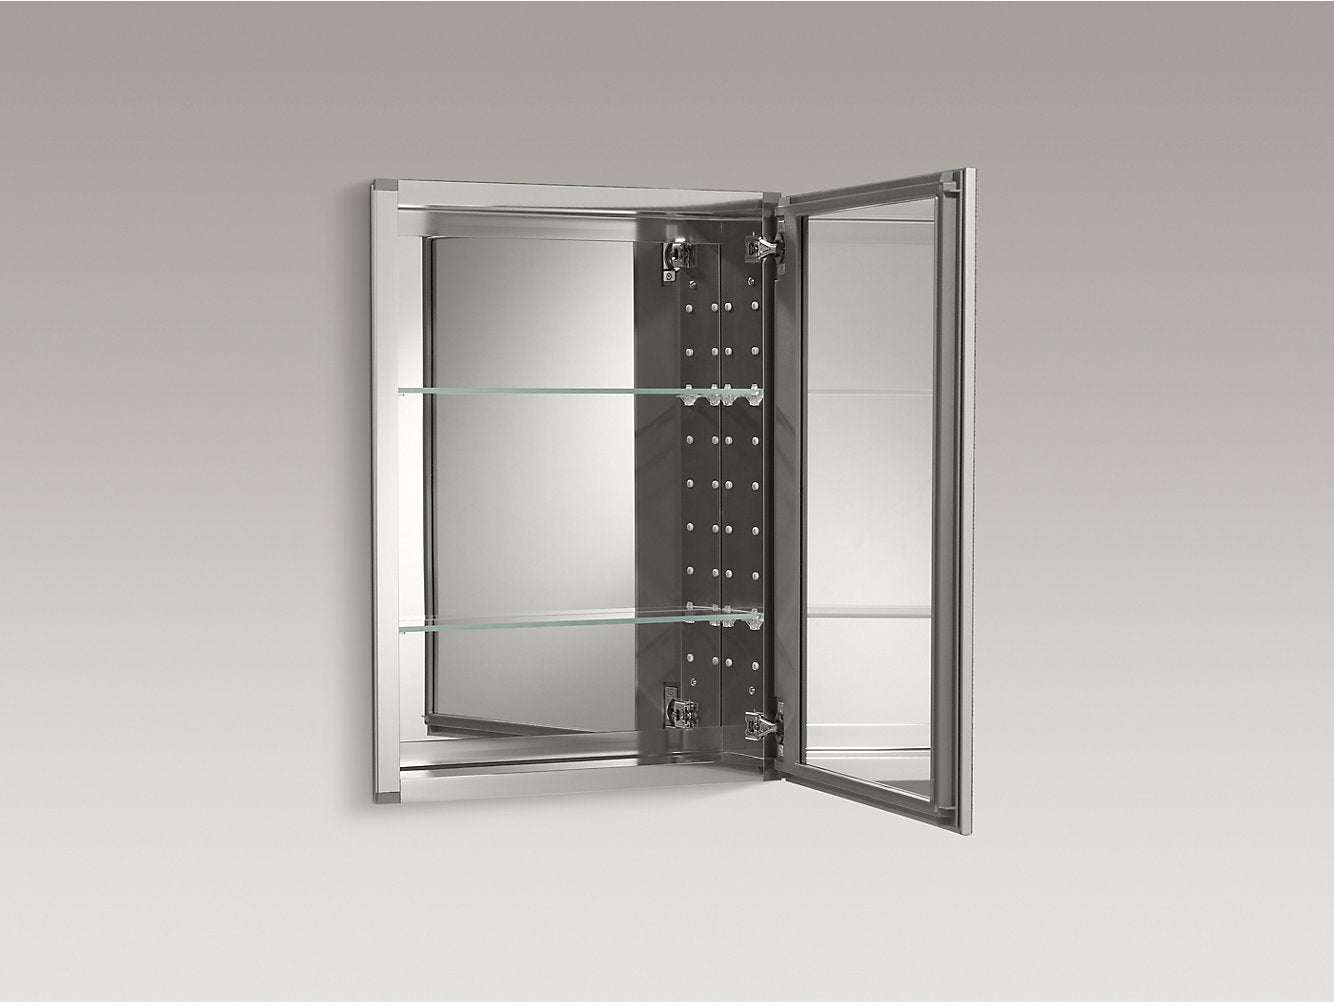 Kohler 20" W x 26" H Aluminum Single Door Medicine Cabinet With Decorative Silver Framed Mirrored Door